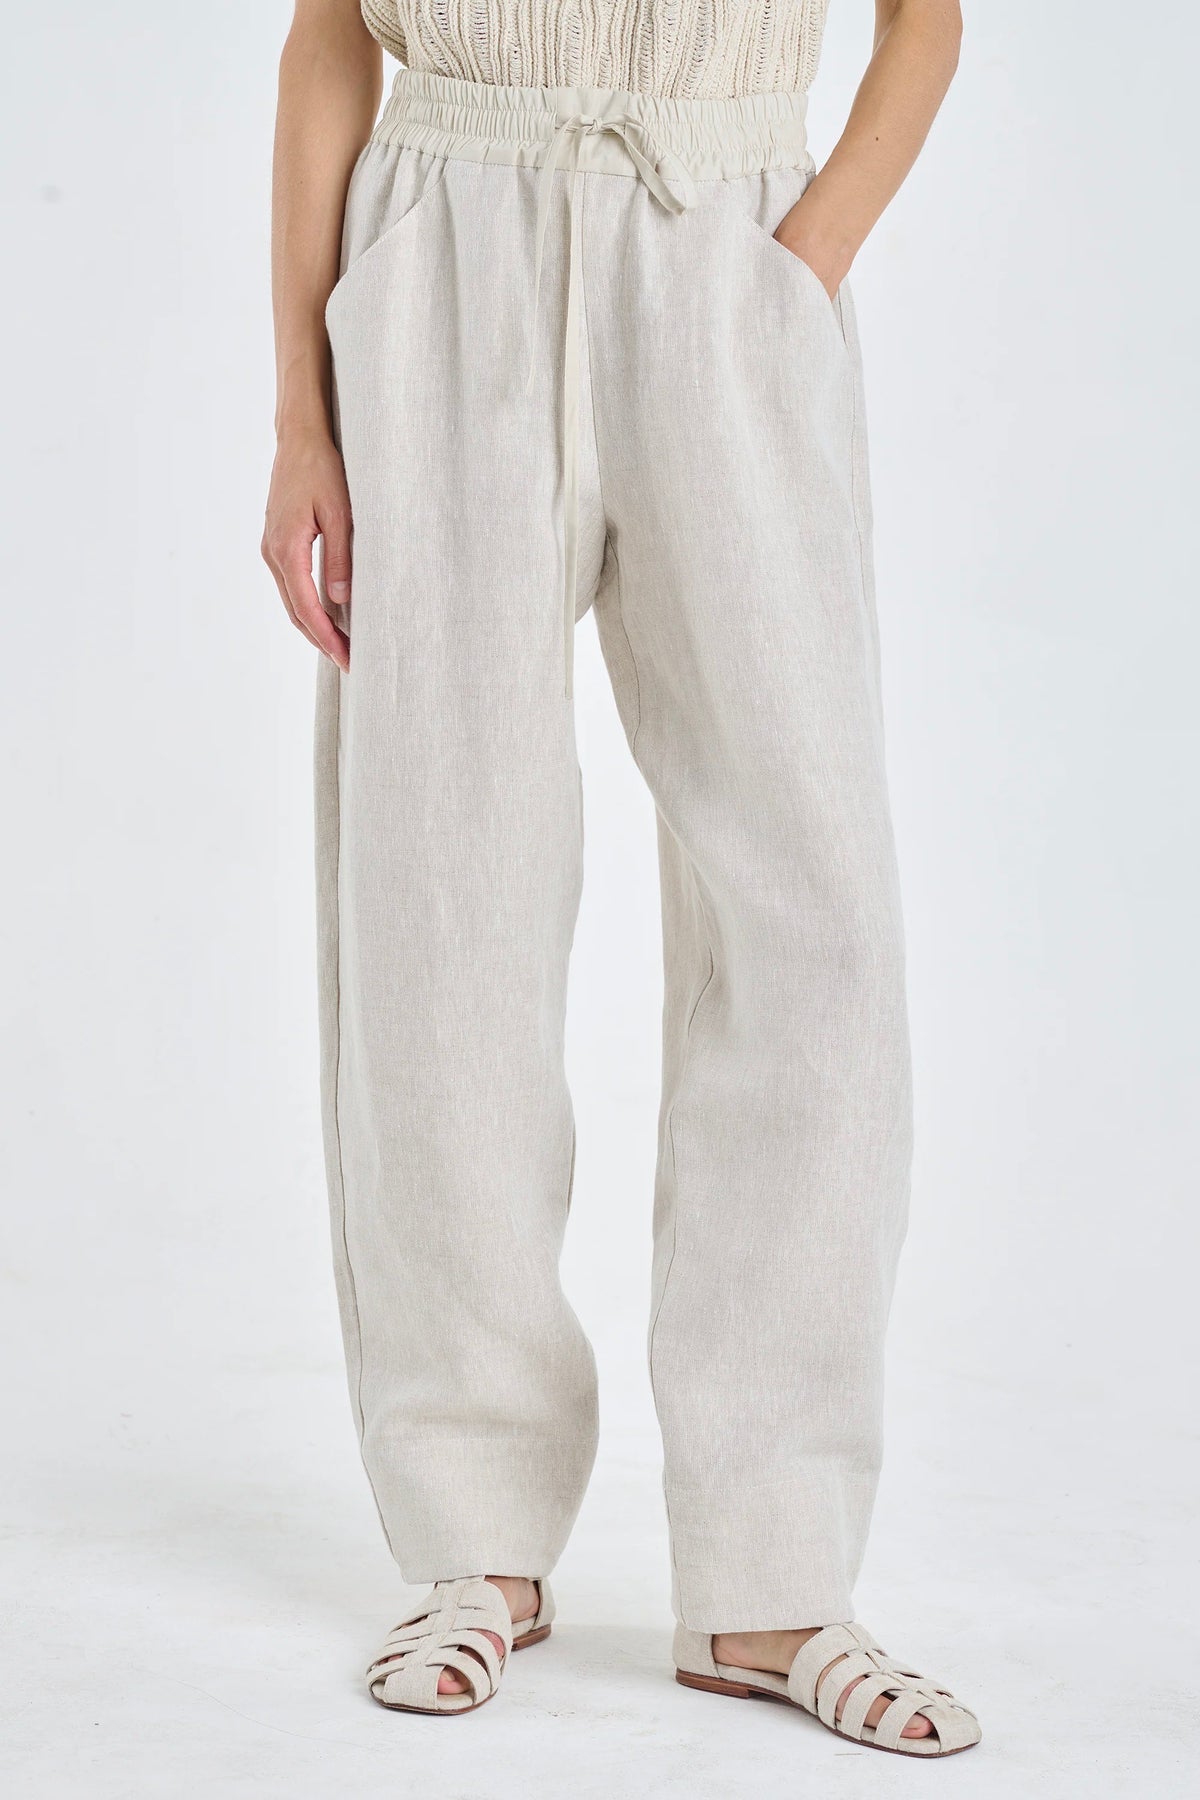 Wide-leg Linen Pants with an Elastic Waistband - High-waisted Pants –  3HLinen Australia